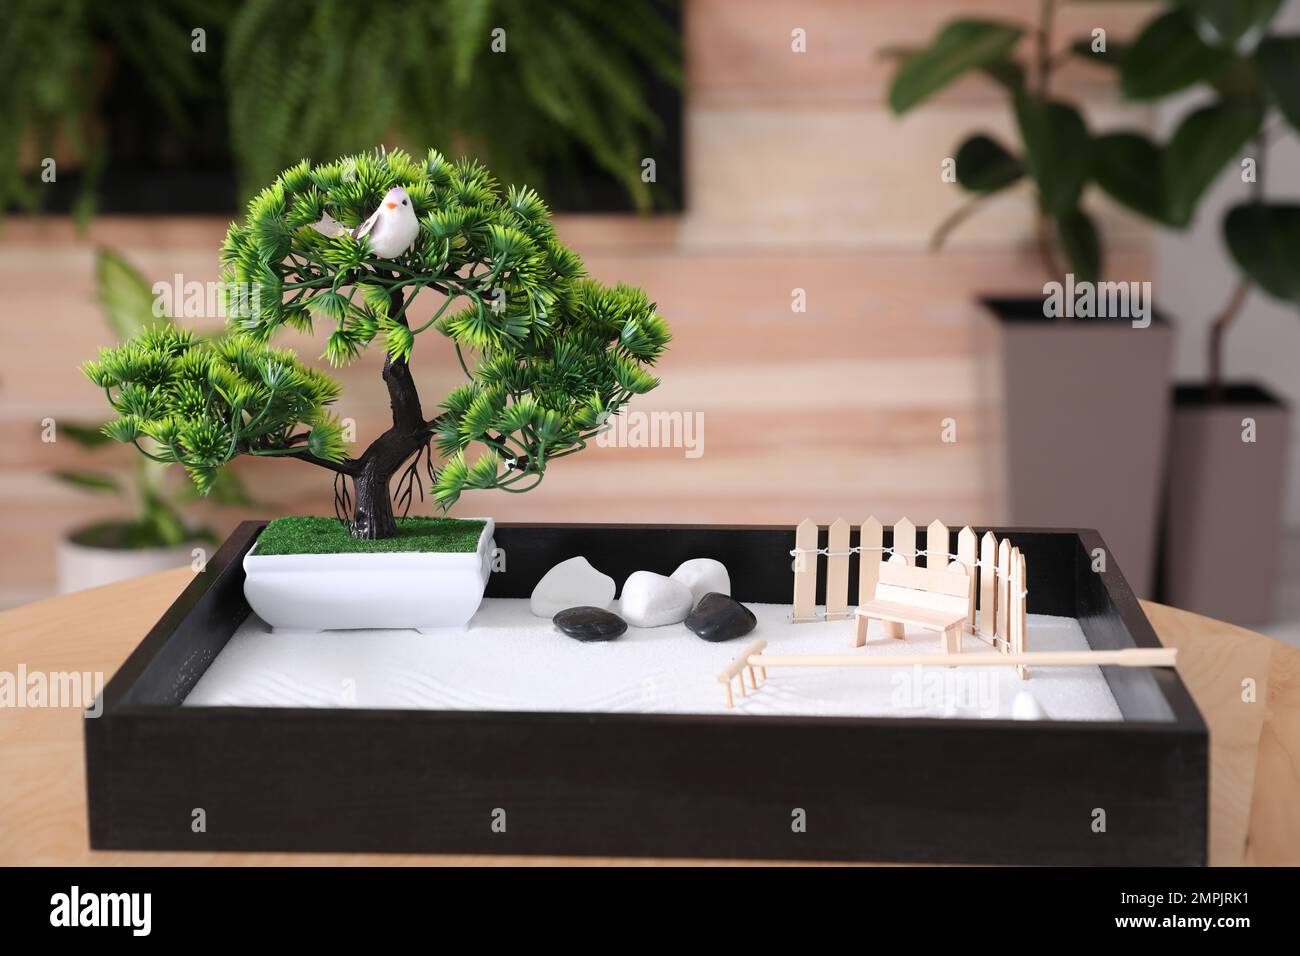 Bel giardino zen in miniatura su tavolo in legno al coperto Foto stock -  Alamy